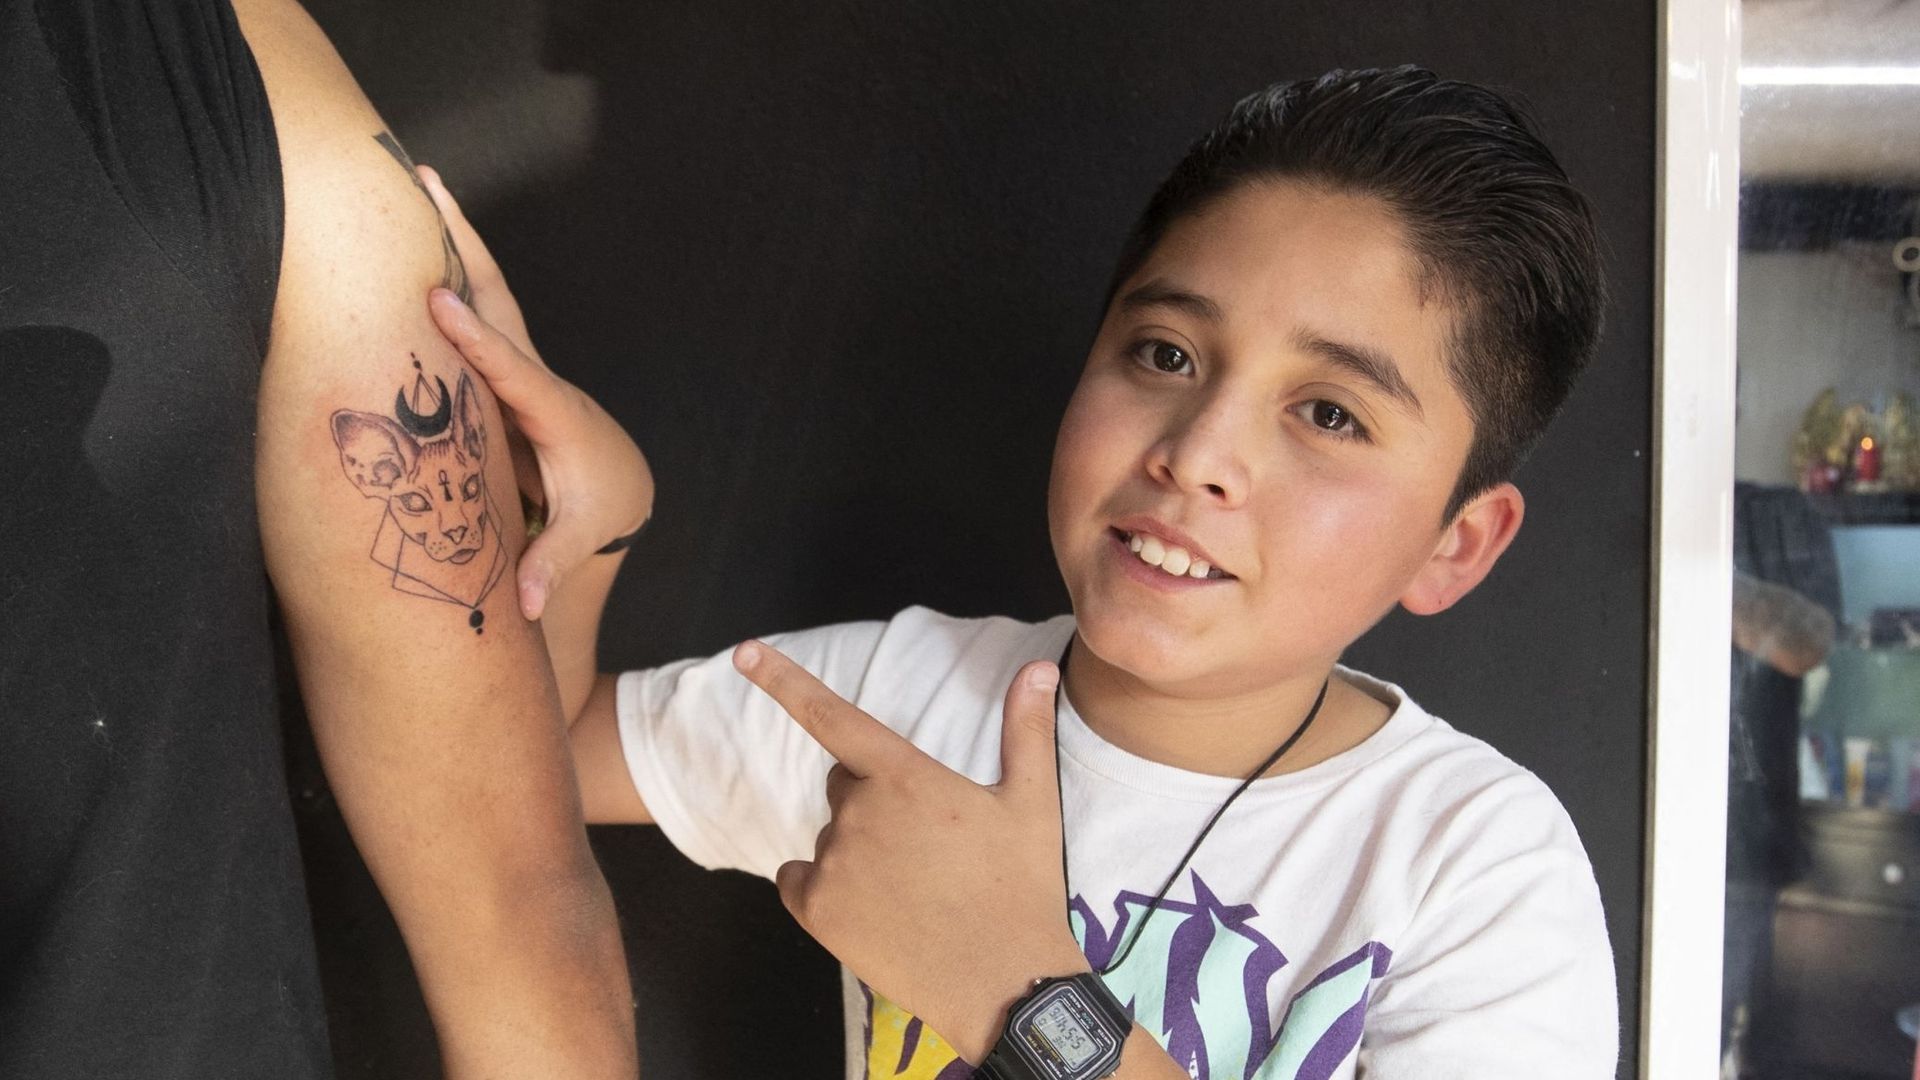 Brandon Burgos pose après avoir tatoué une personne dans la ville de Puebla, dans l'État de Puebla, au Mexique, le 10 novembre 2021.